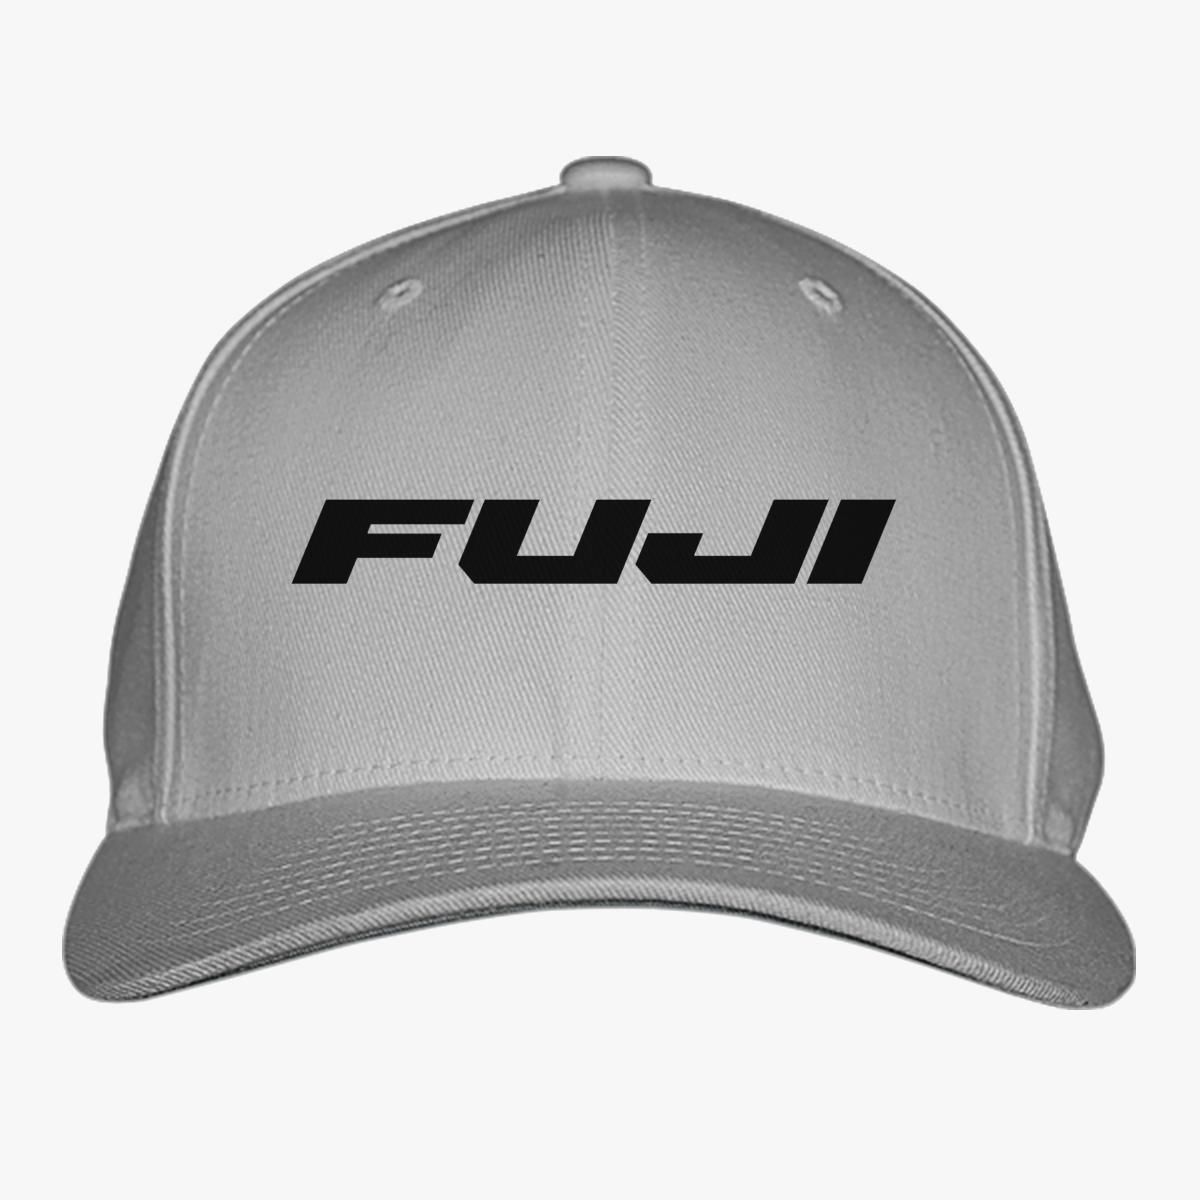 Fuji Bicycles Baseball Cap - Customon